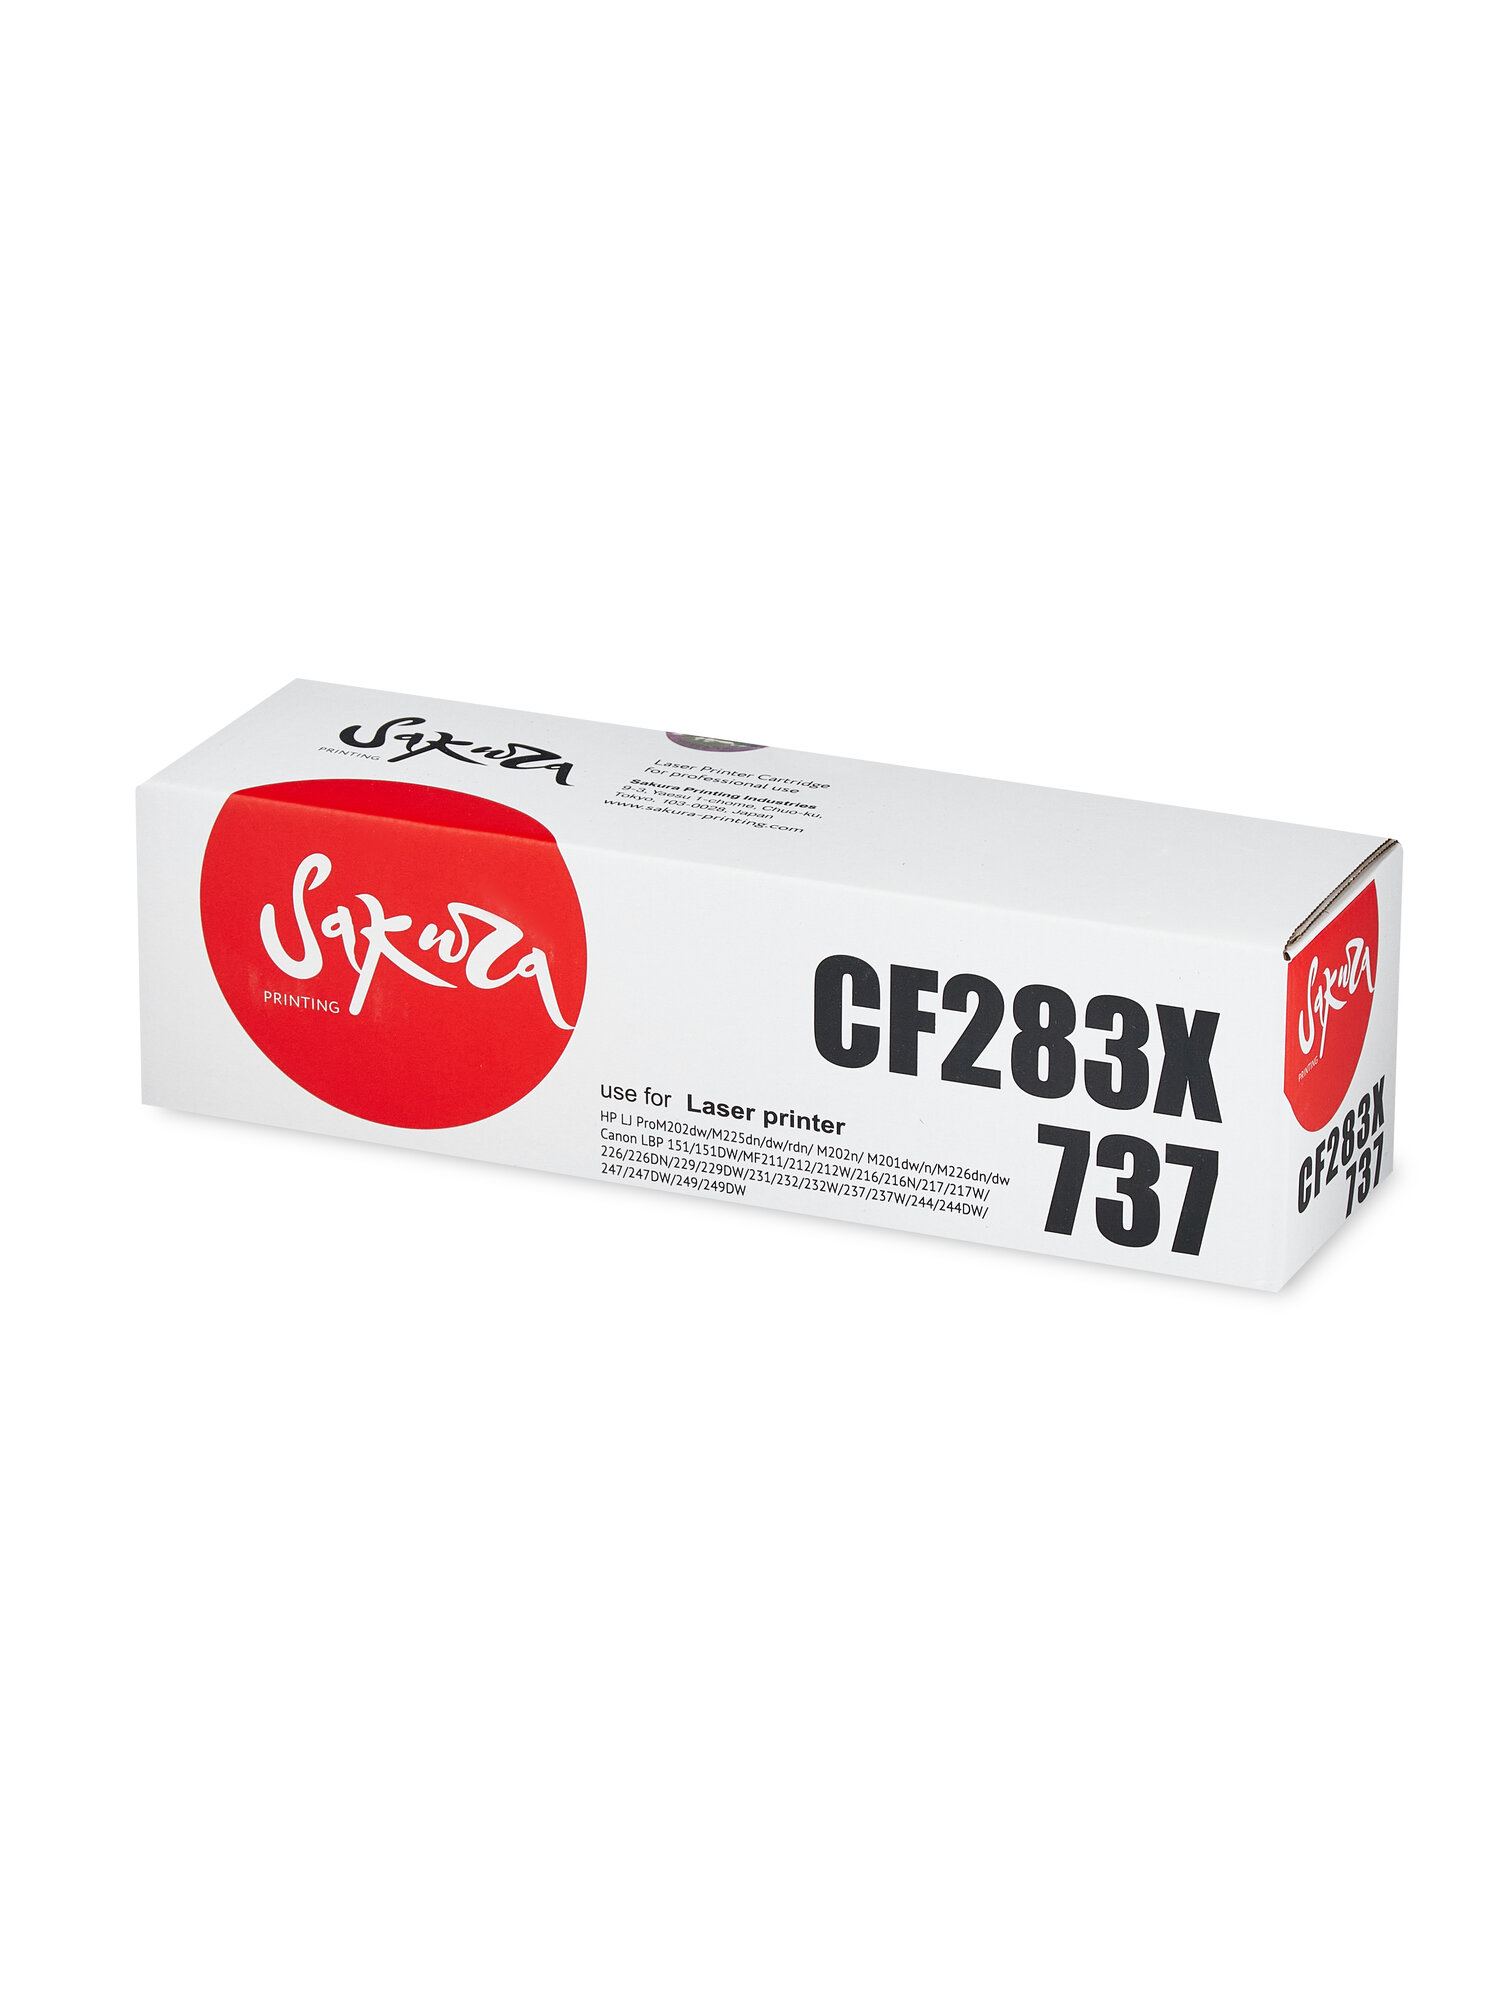 Картридж CF283X/737 для HP, Canon, лазерный, черный, 2200 страниц, Sakura